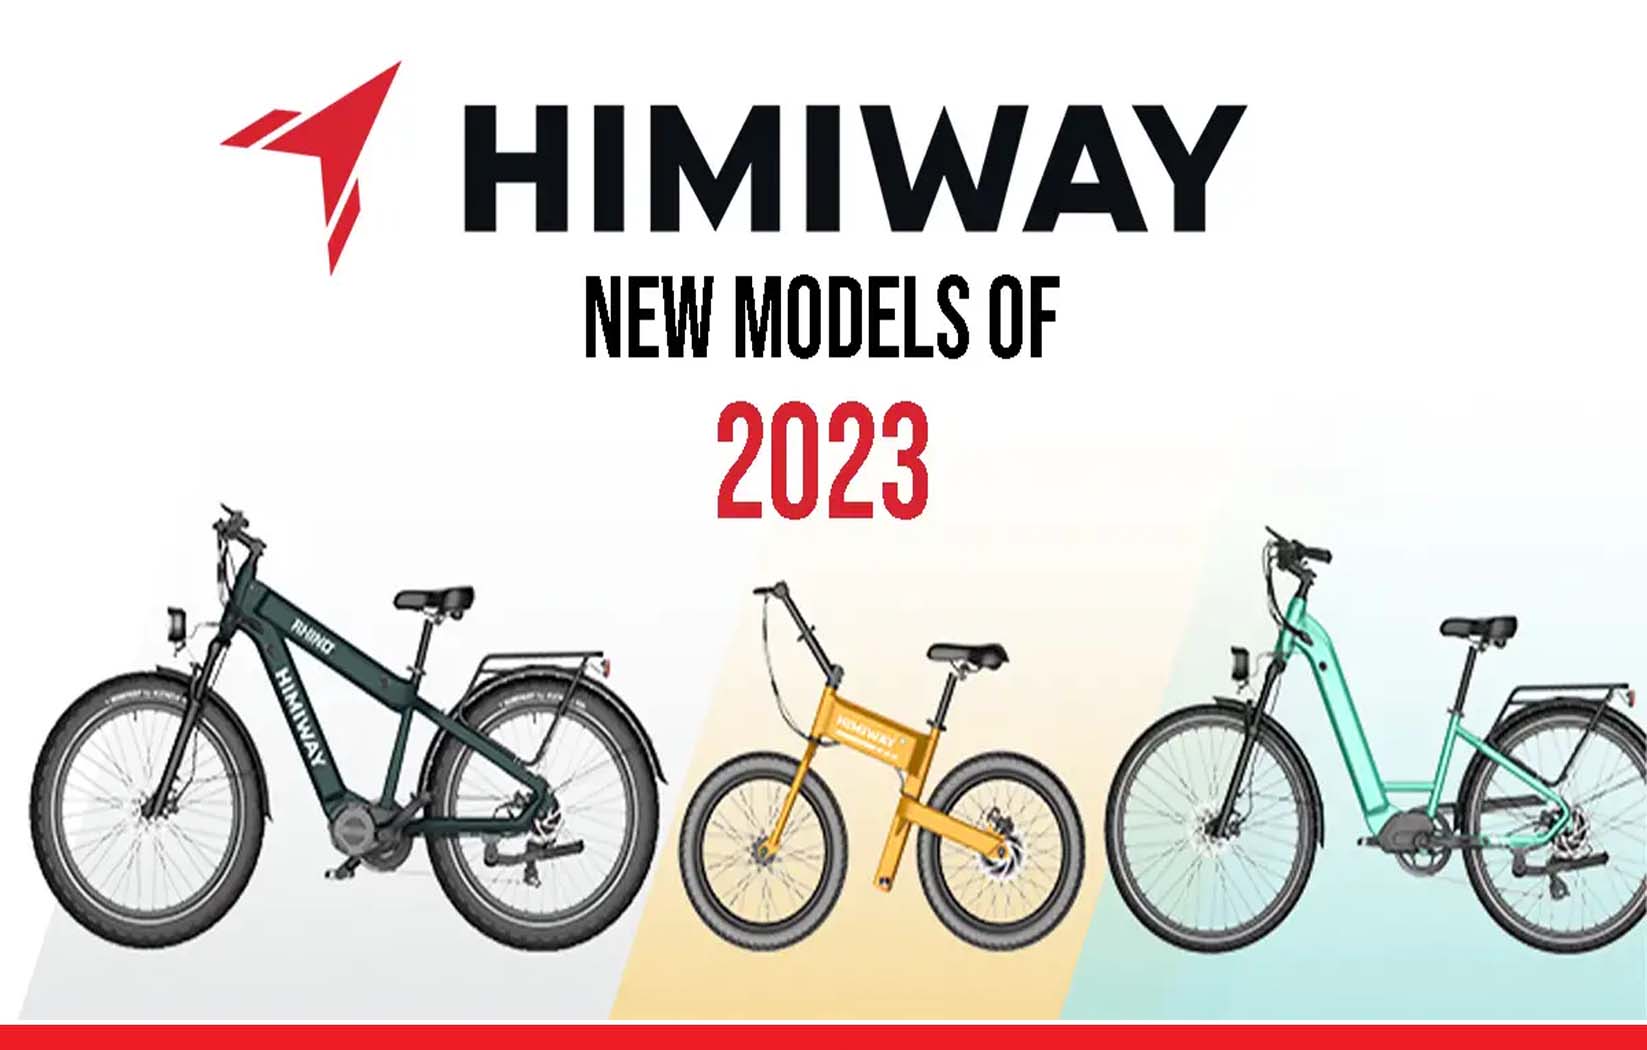 हिमीवे कंपनी ने इलेक्ट्रिक बाइक बाजार में उतारी 3 बाईक